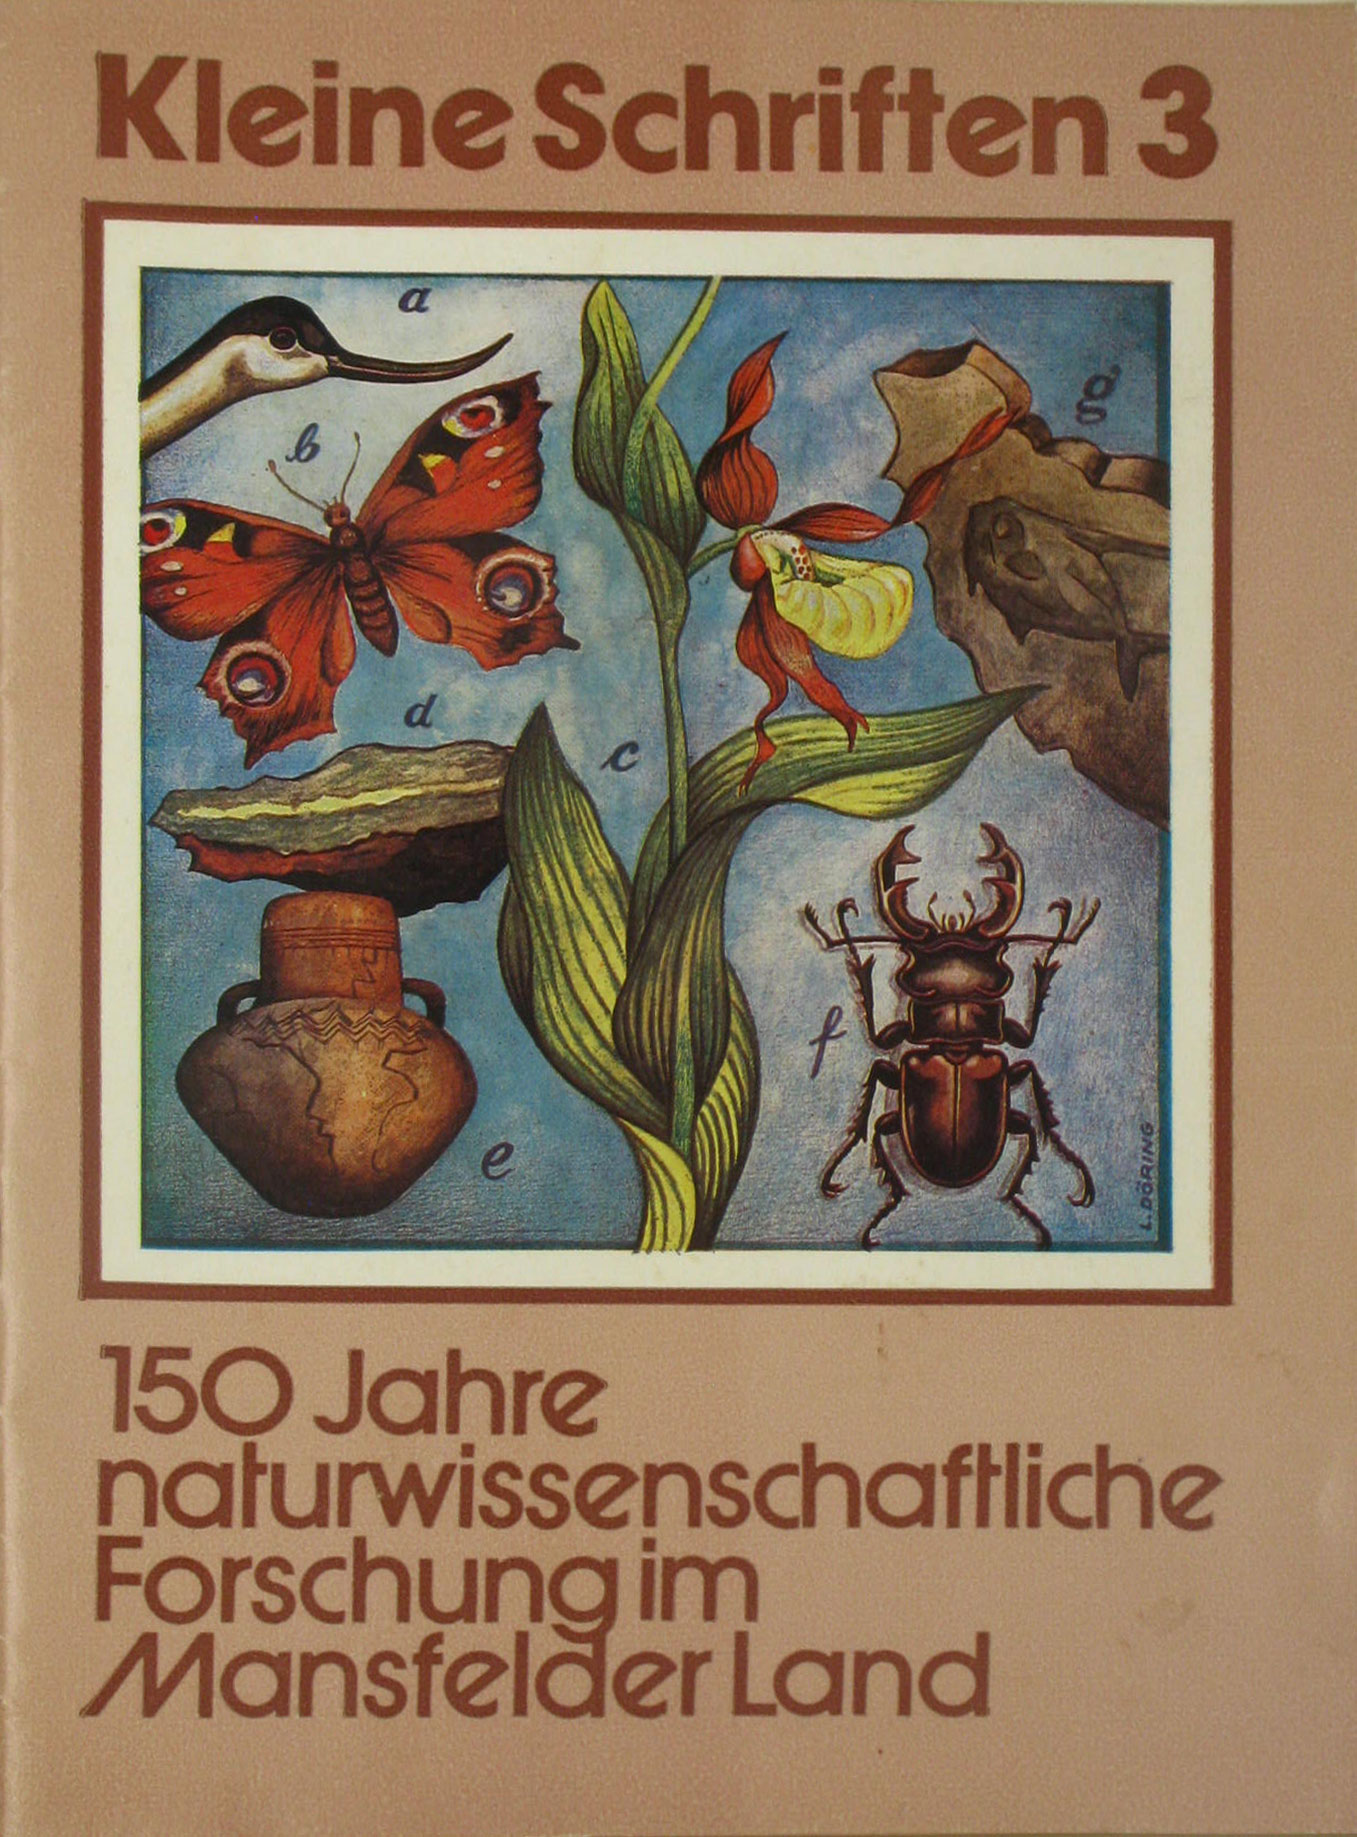 Lohmeier, Helmut (wiss. Mitarbeiter):  150 Jahre naturwissenschaftliche Forschungen im Mansfelder Land (Kleine Schriften 3) 